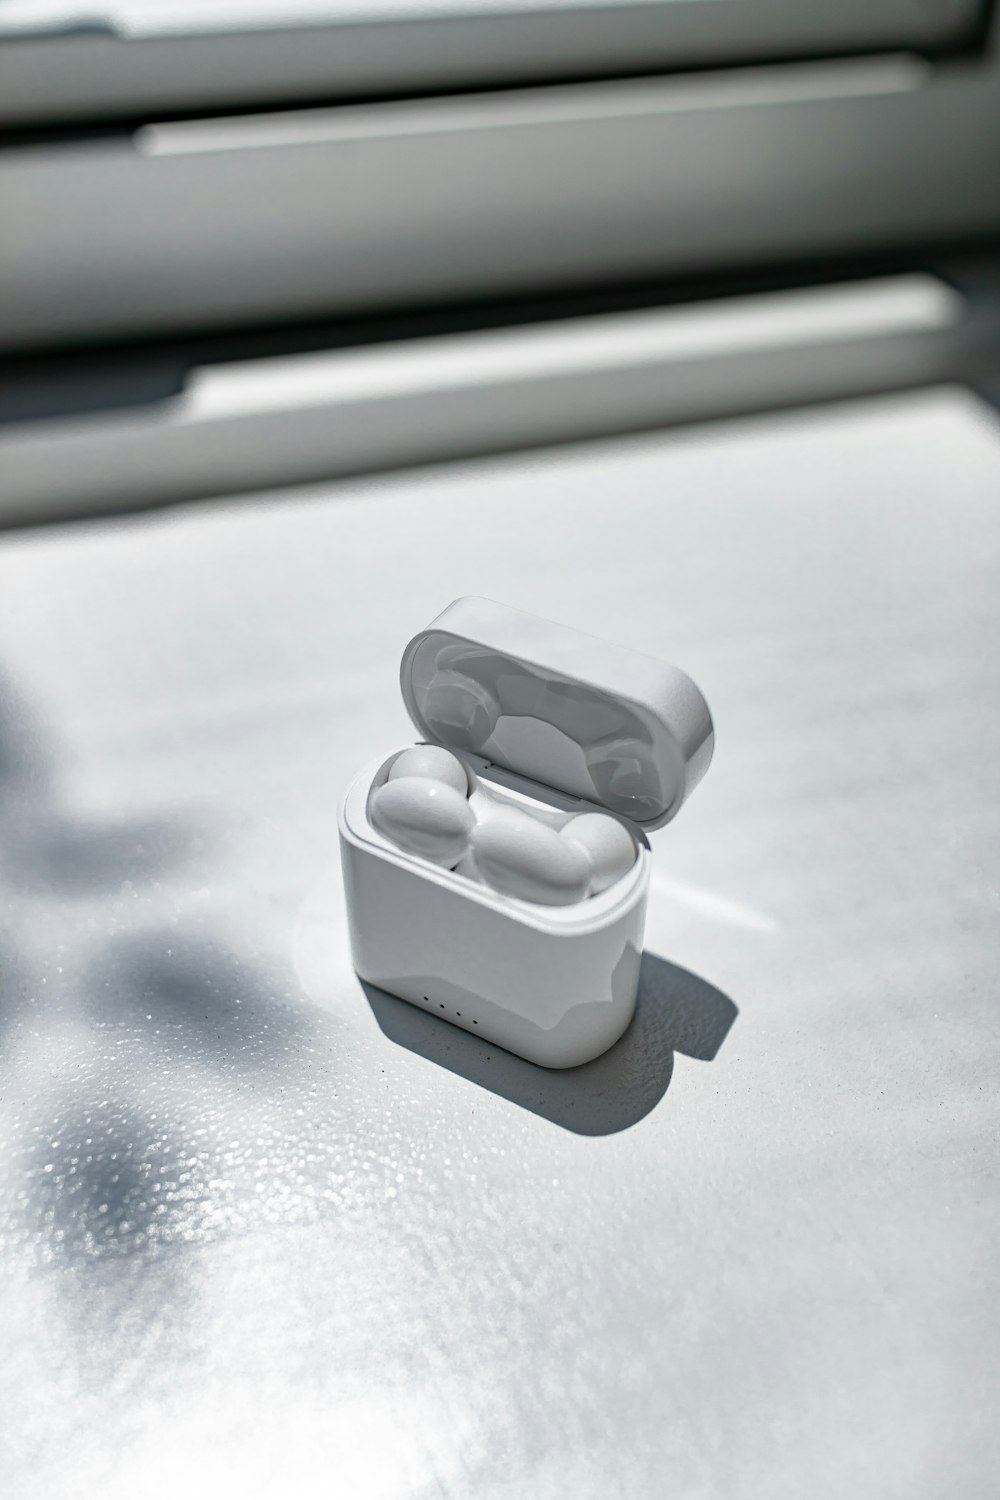 white apple earpods in white plastic case